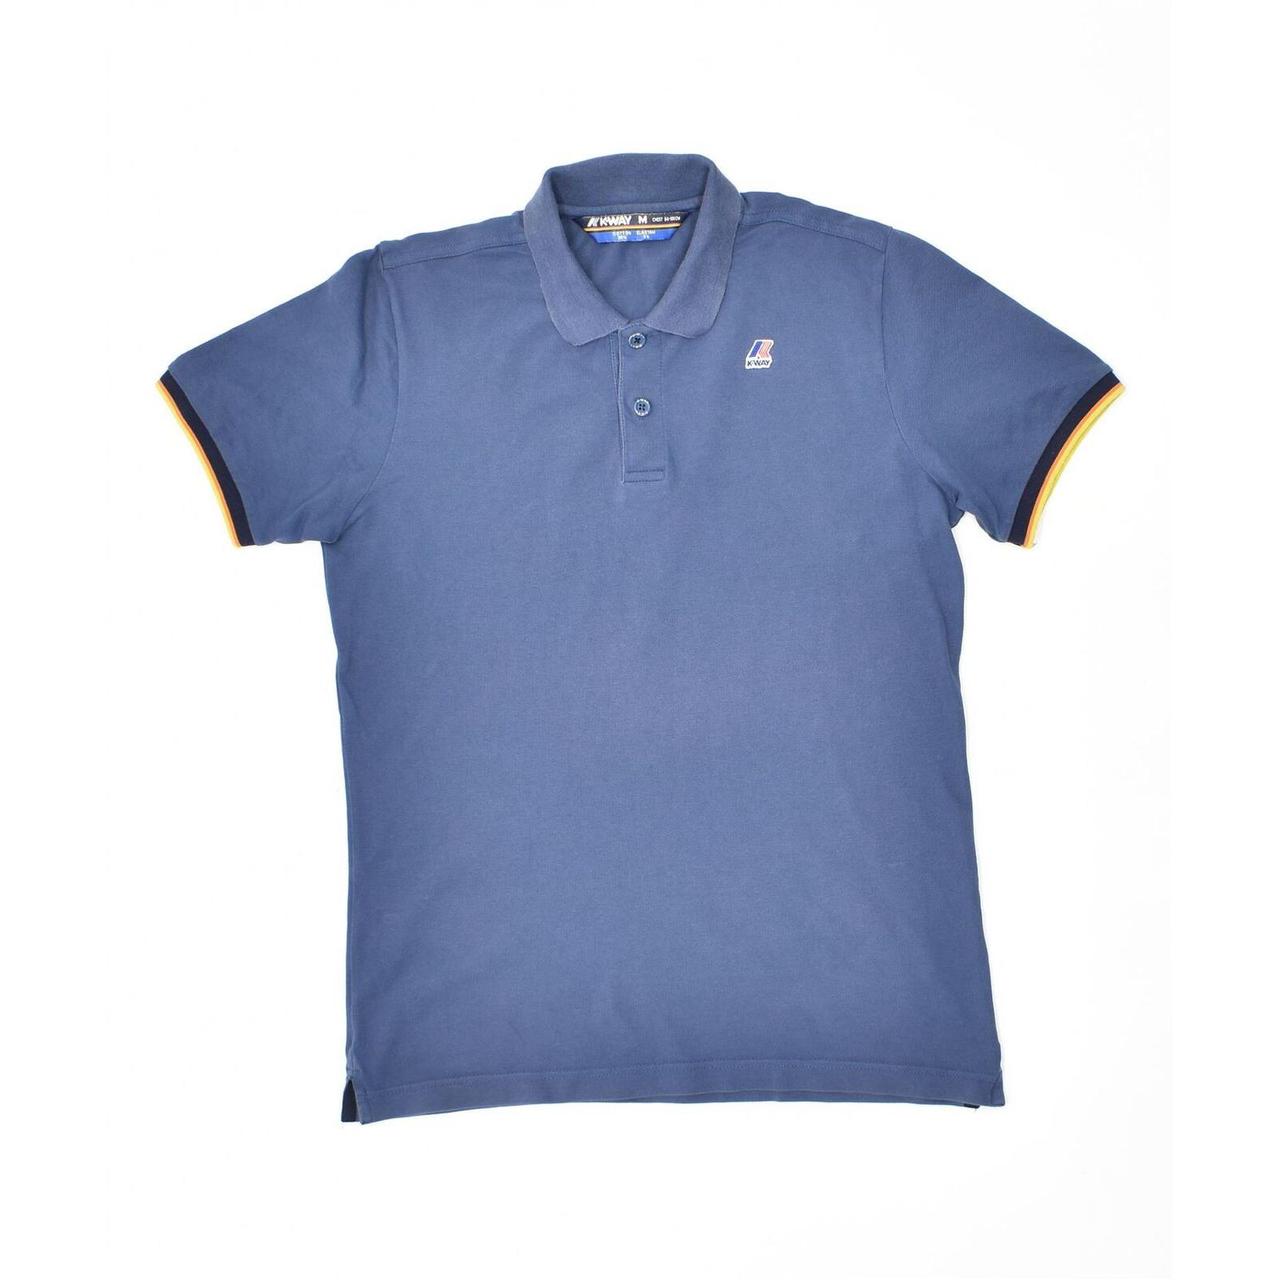 Product Image 1 - K-WAY Mens Polo Shirt Medium